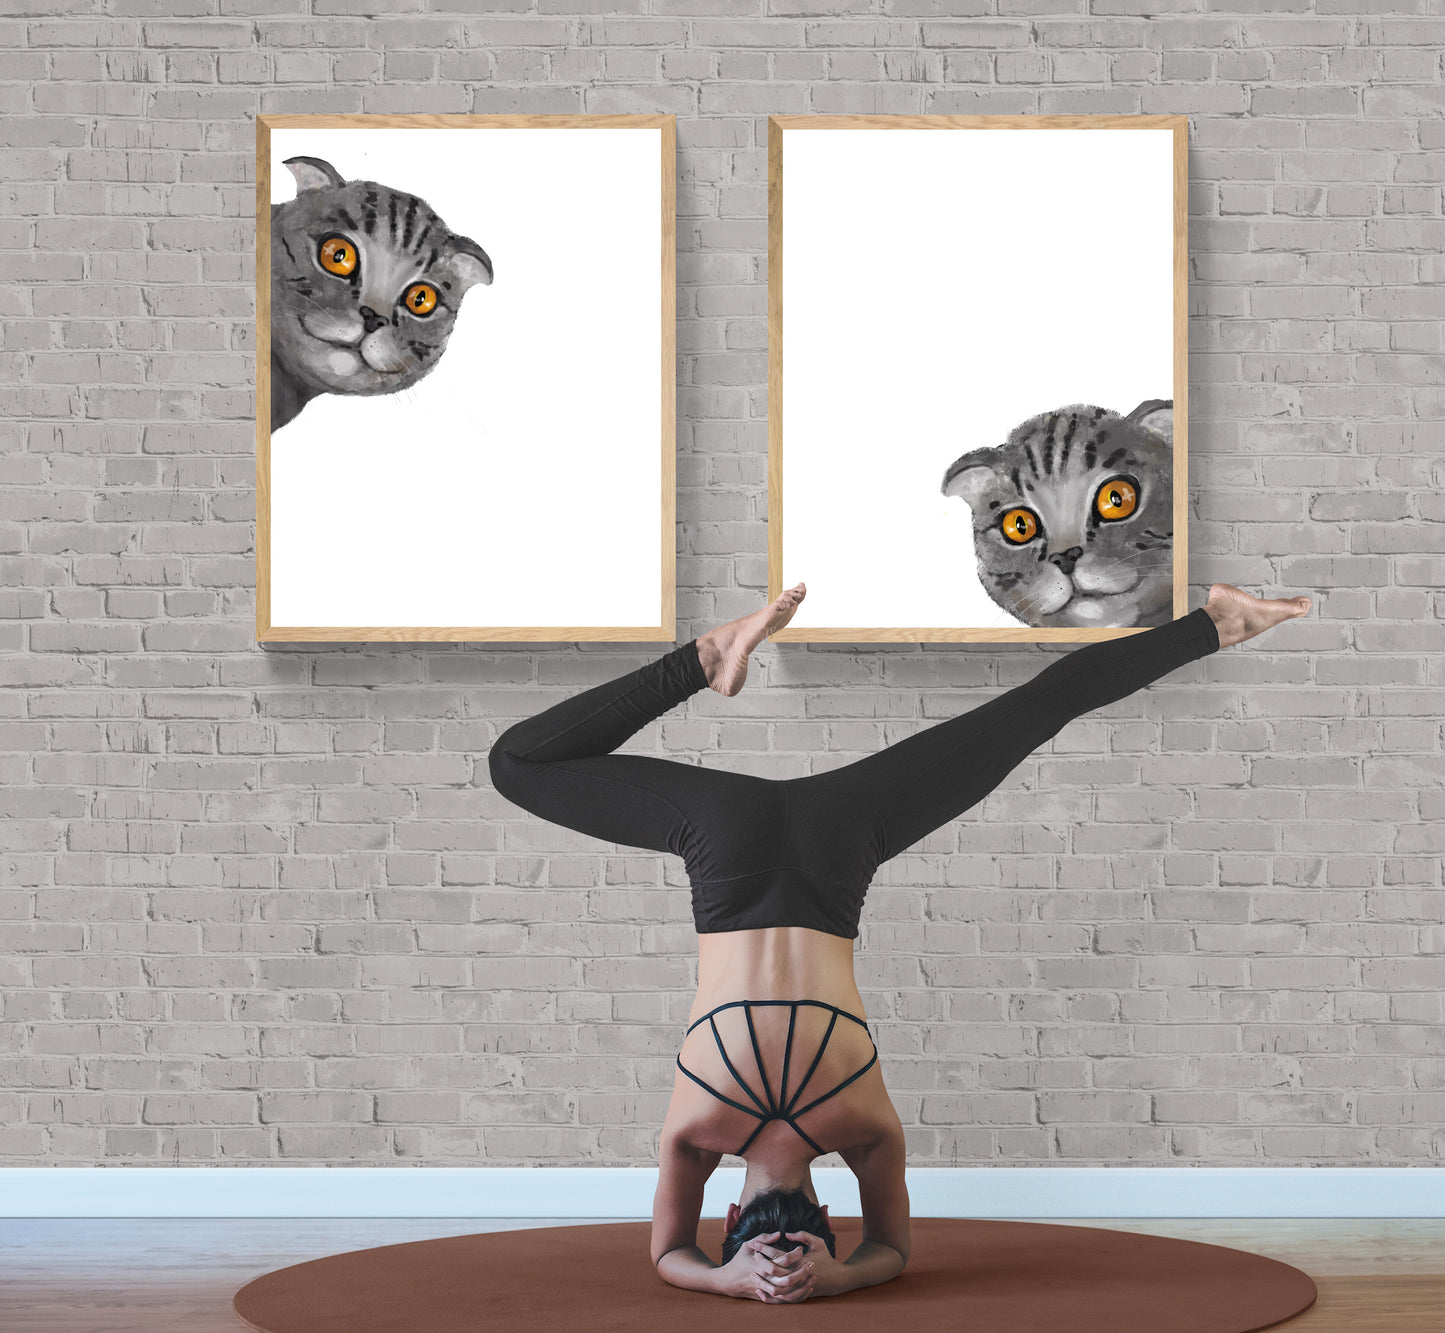 Gray Scottish Fold Peekaboo Cat Wall Art